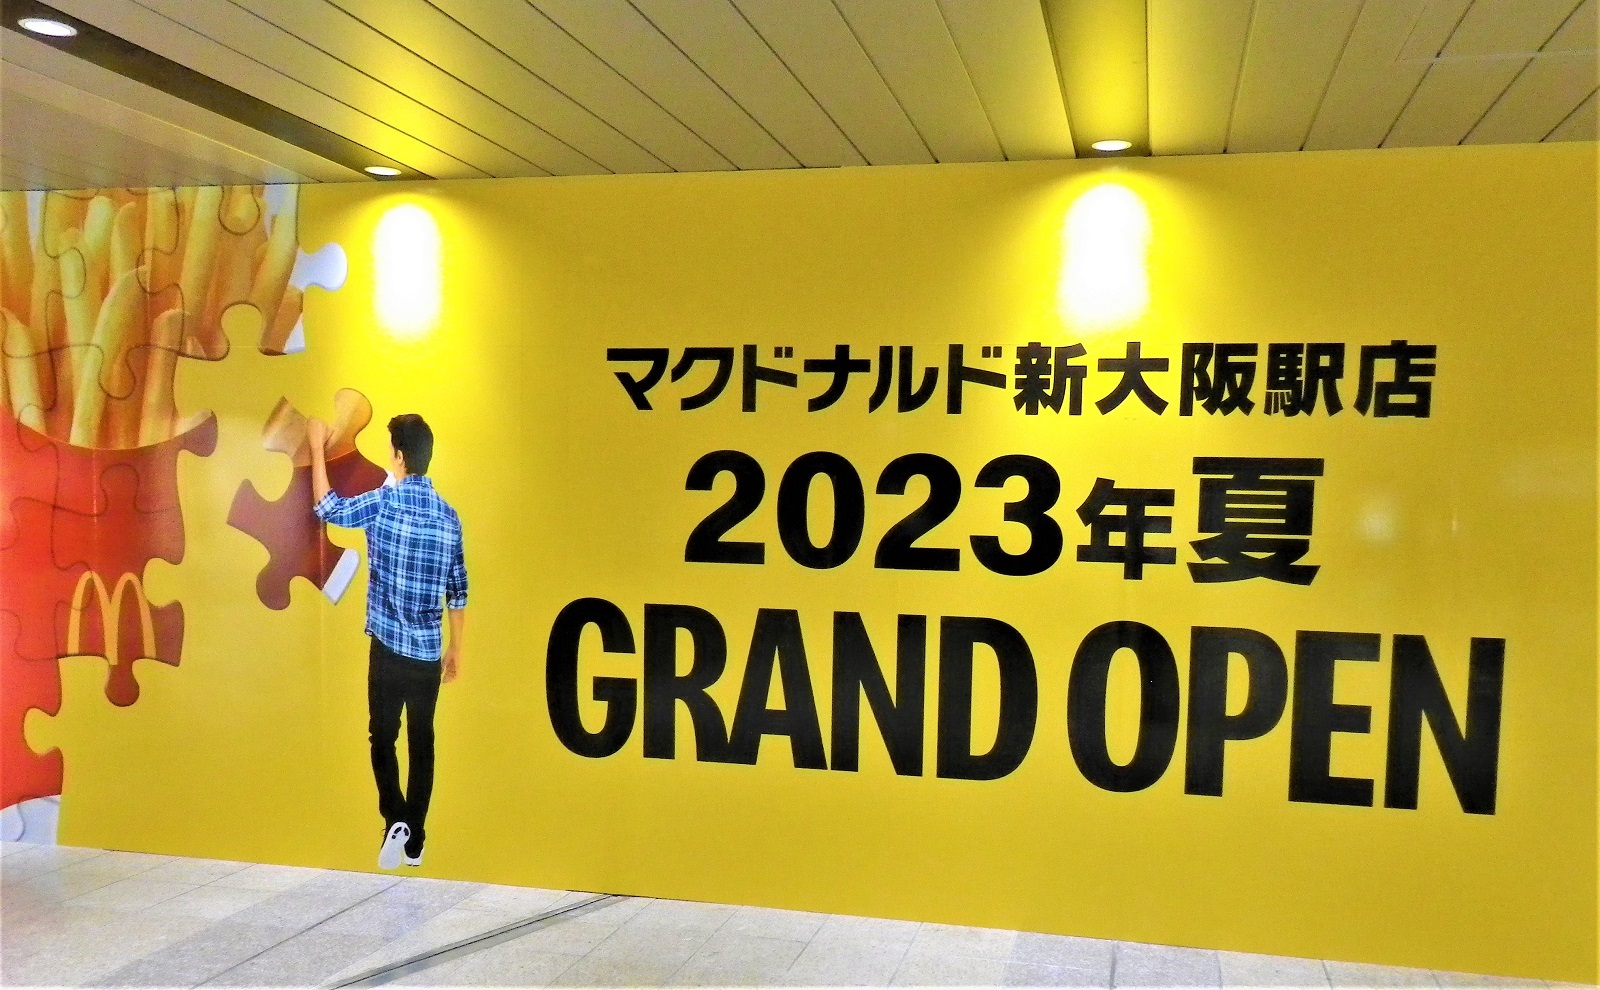 現地の壁に貼られている「グランドオープン」のポスター。